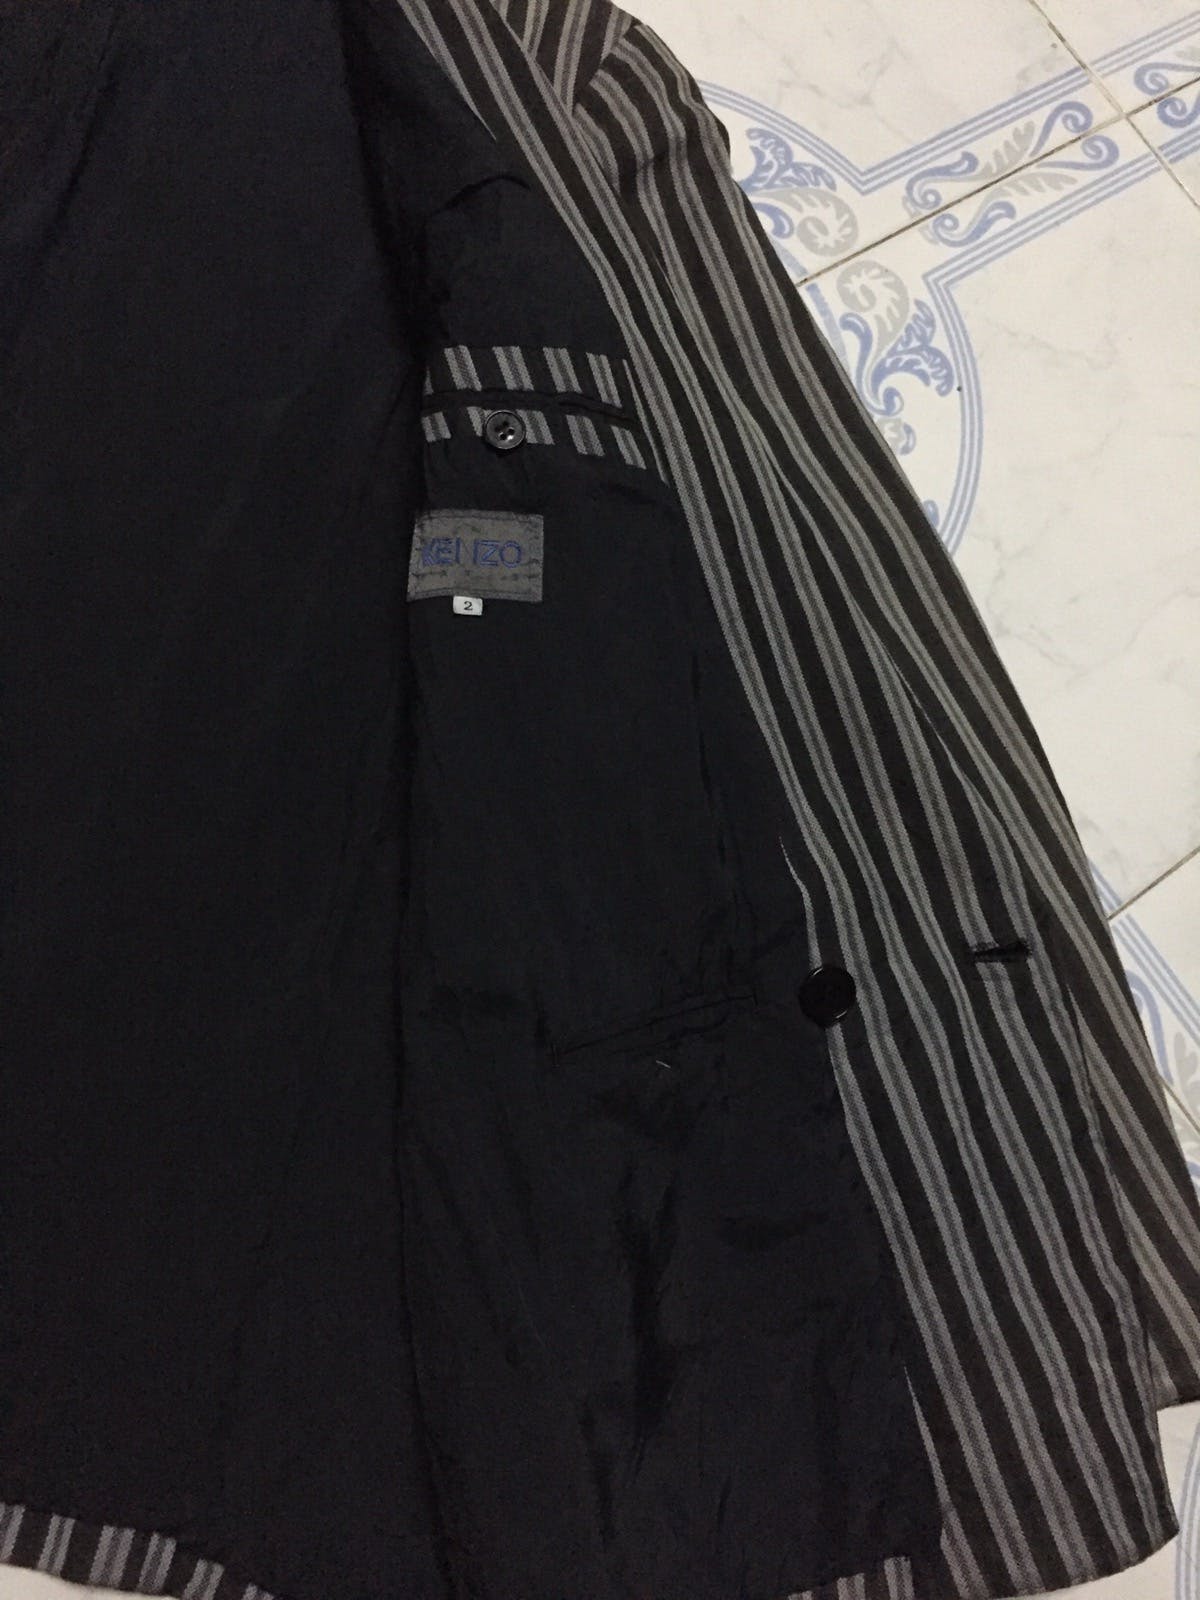 Kenzo Zebra Stripes Jacket Coat Made in Japan - 17